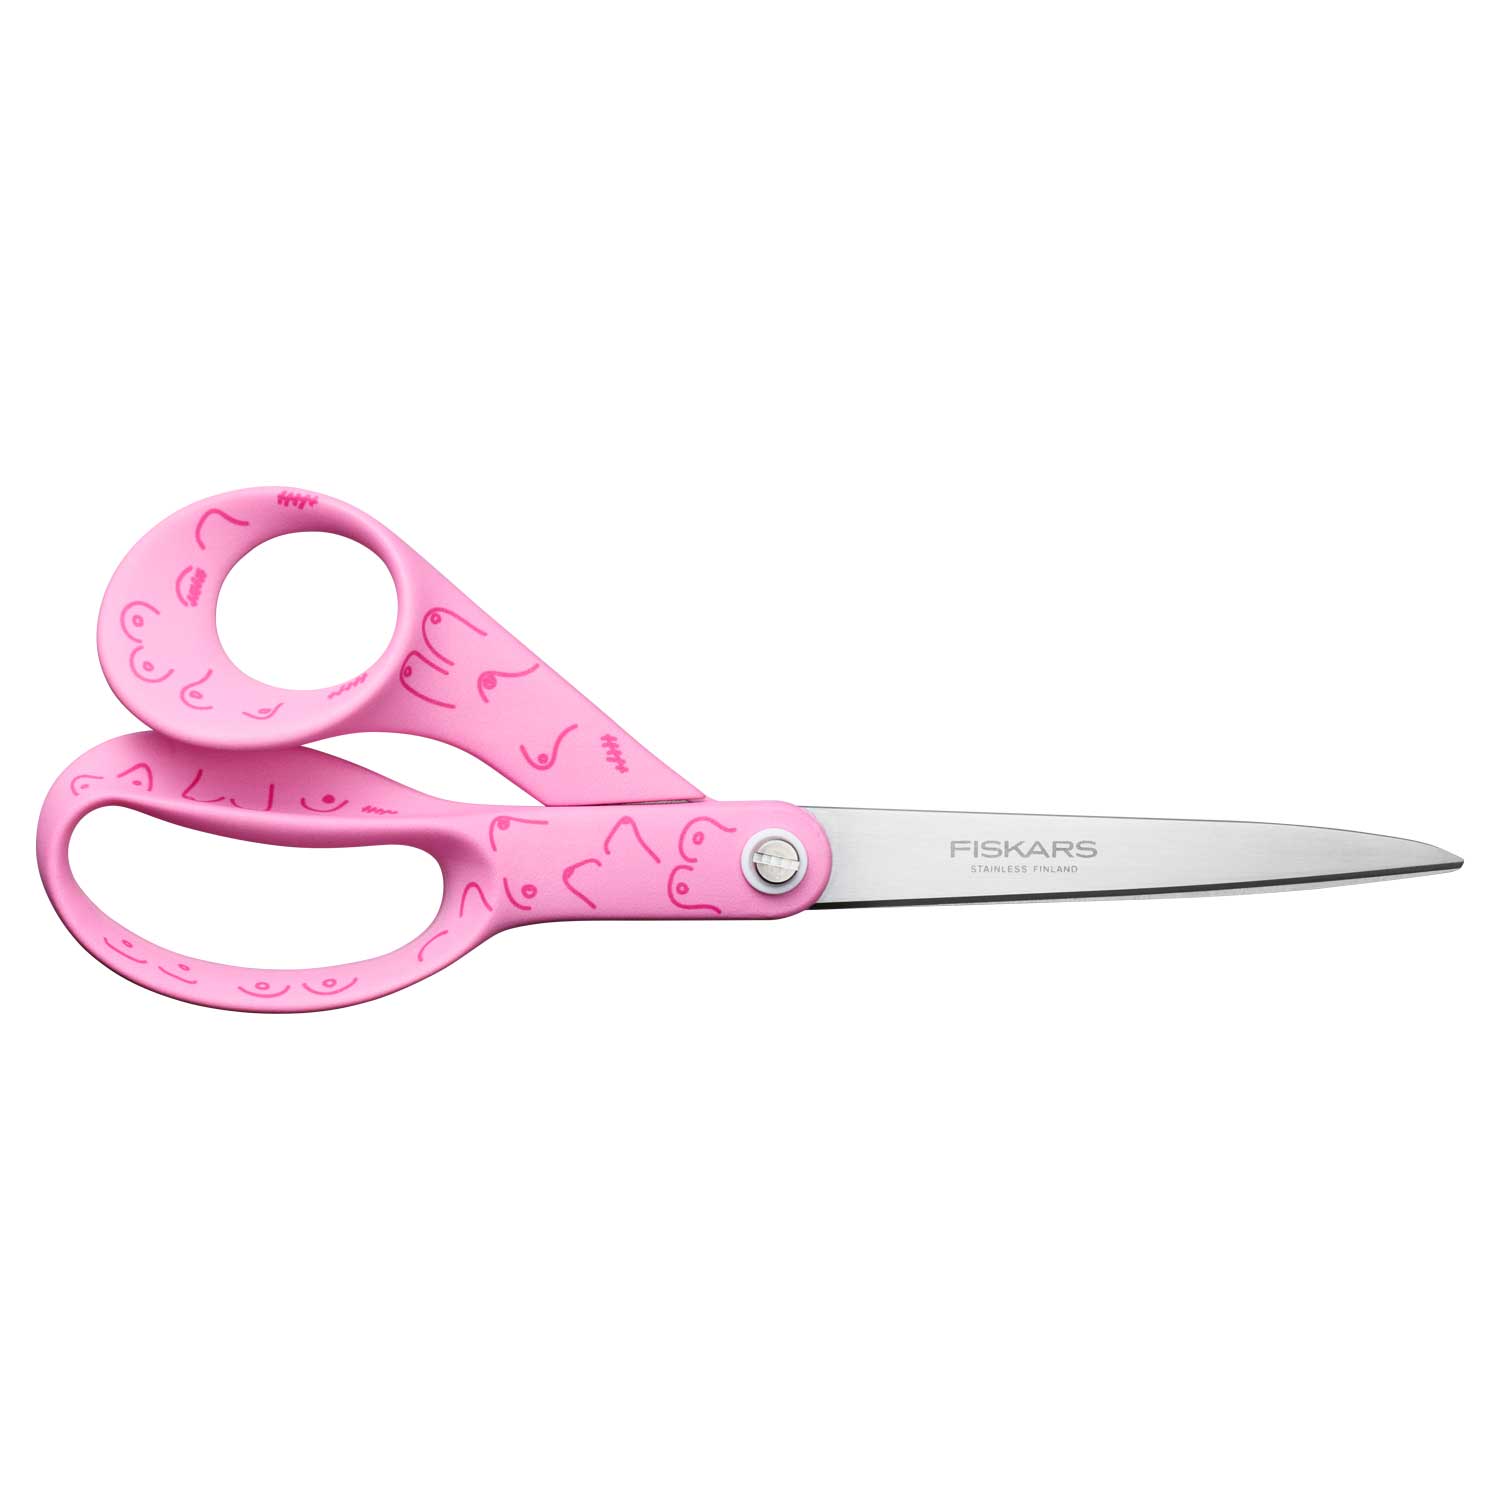 https://api-prod.royaldesign.se/api/products/image/2/fiskars-universal-scissor-21-cm-pink-ribbon-1